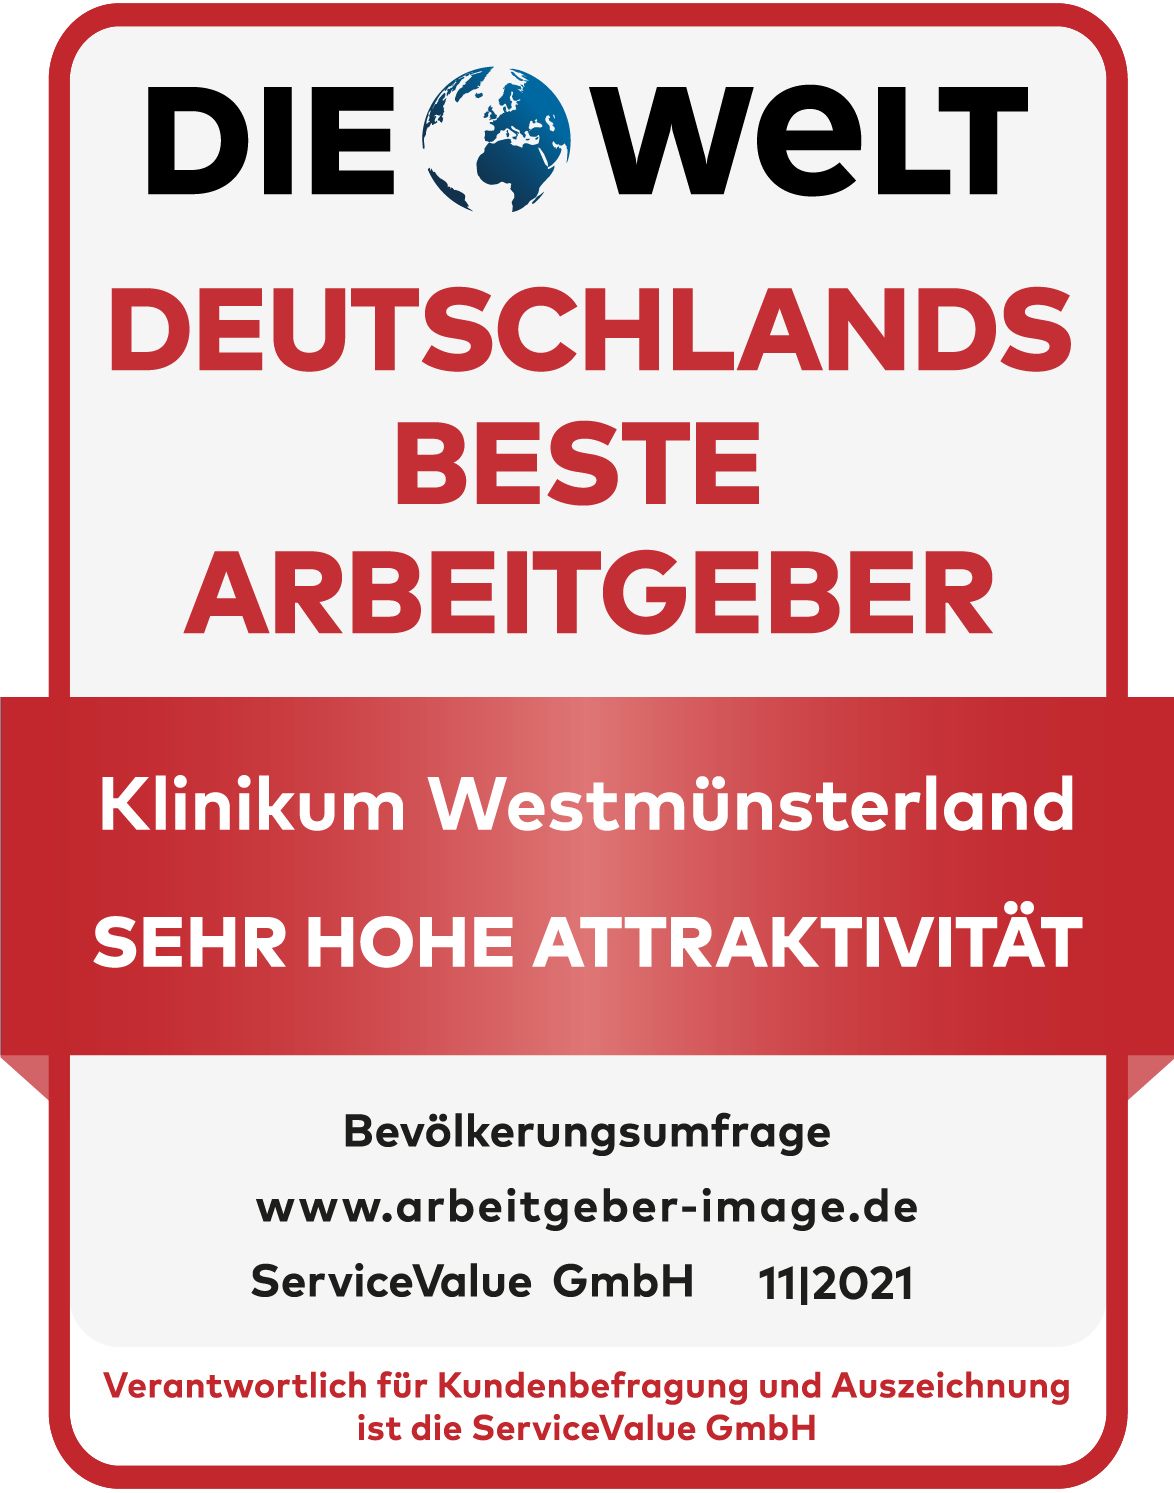 Klinikum Westmünsterland GmbH